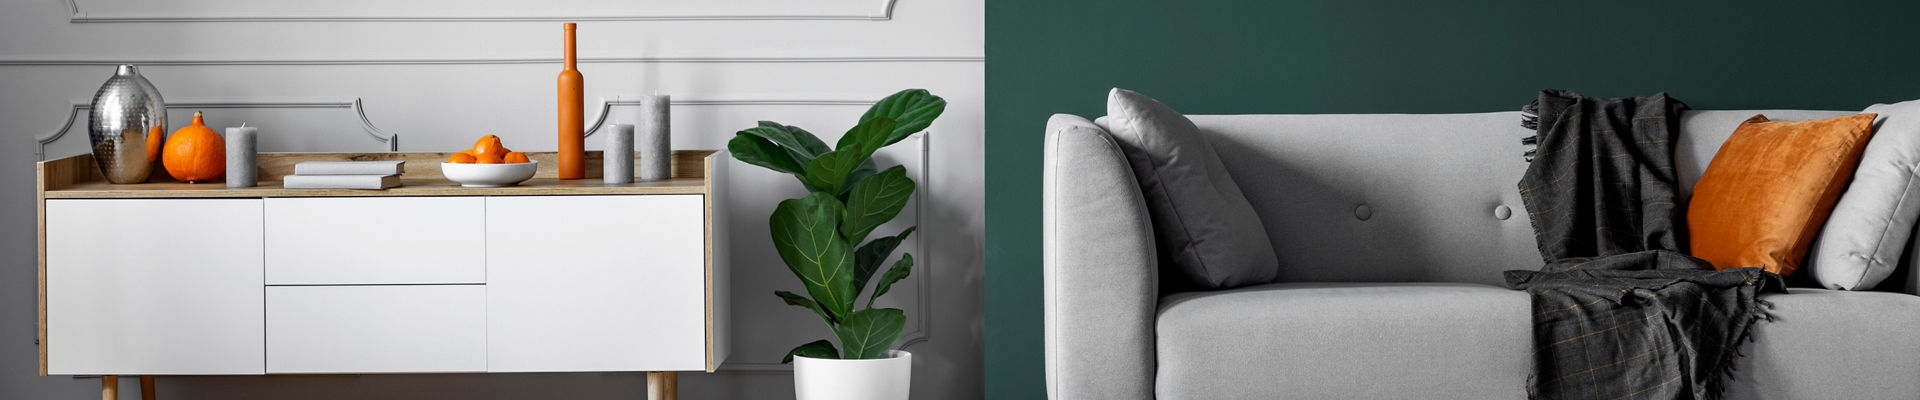 Pared verde y gris del elegante interior de la sala de estar con muebles de madera blanca y un sofá gris